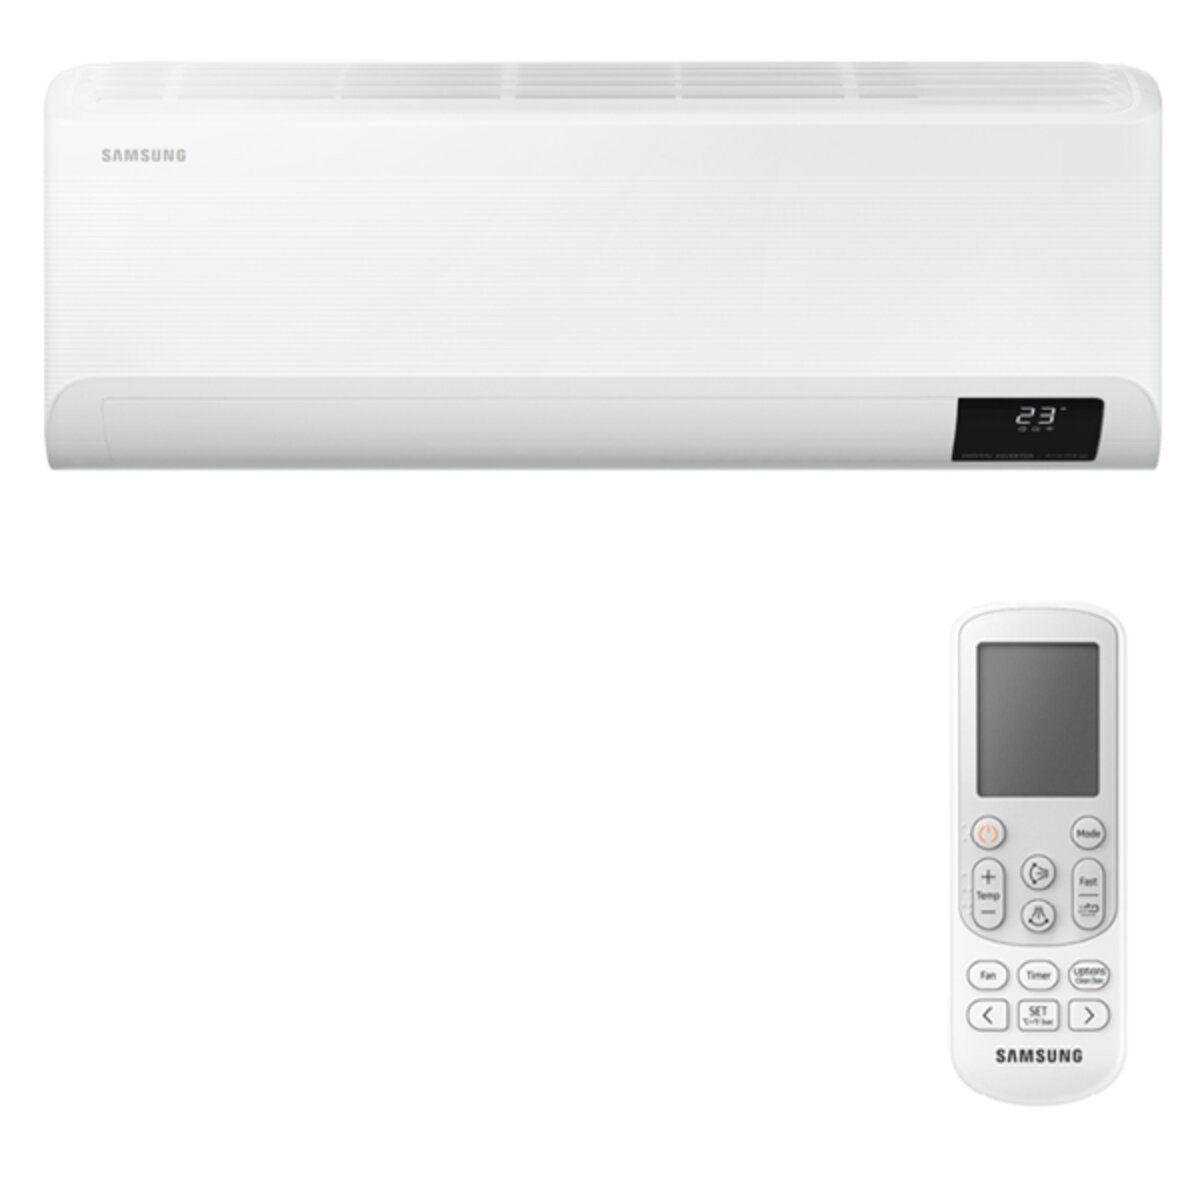 Samsung Cebu WLAN Klimaanlage Penta Split 7000 + 7000 + 7000 + 9000 + 12000 BTU Wechselrichter A++ WLAN Außengerät 10,0 kW